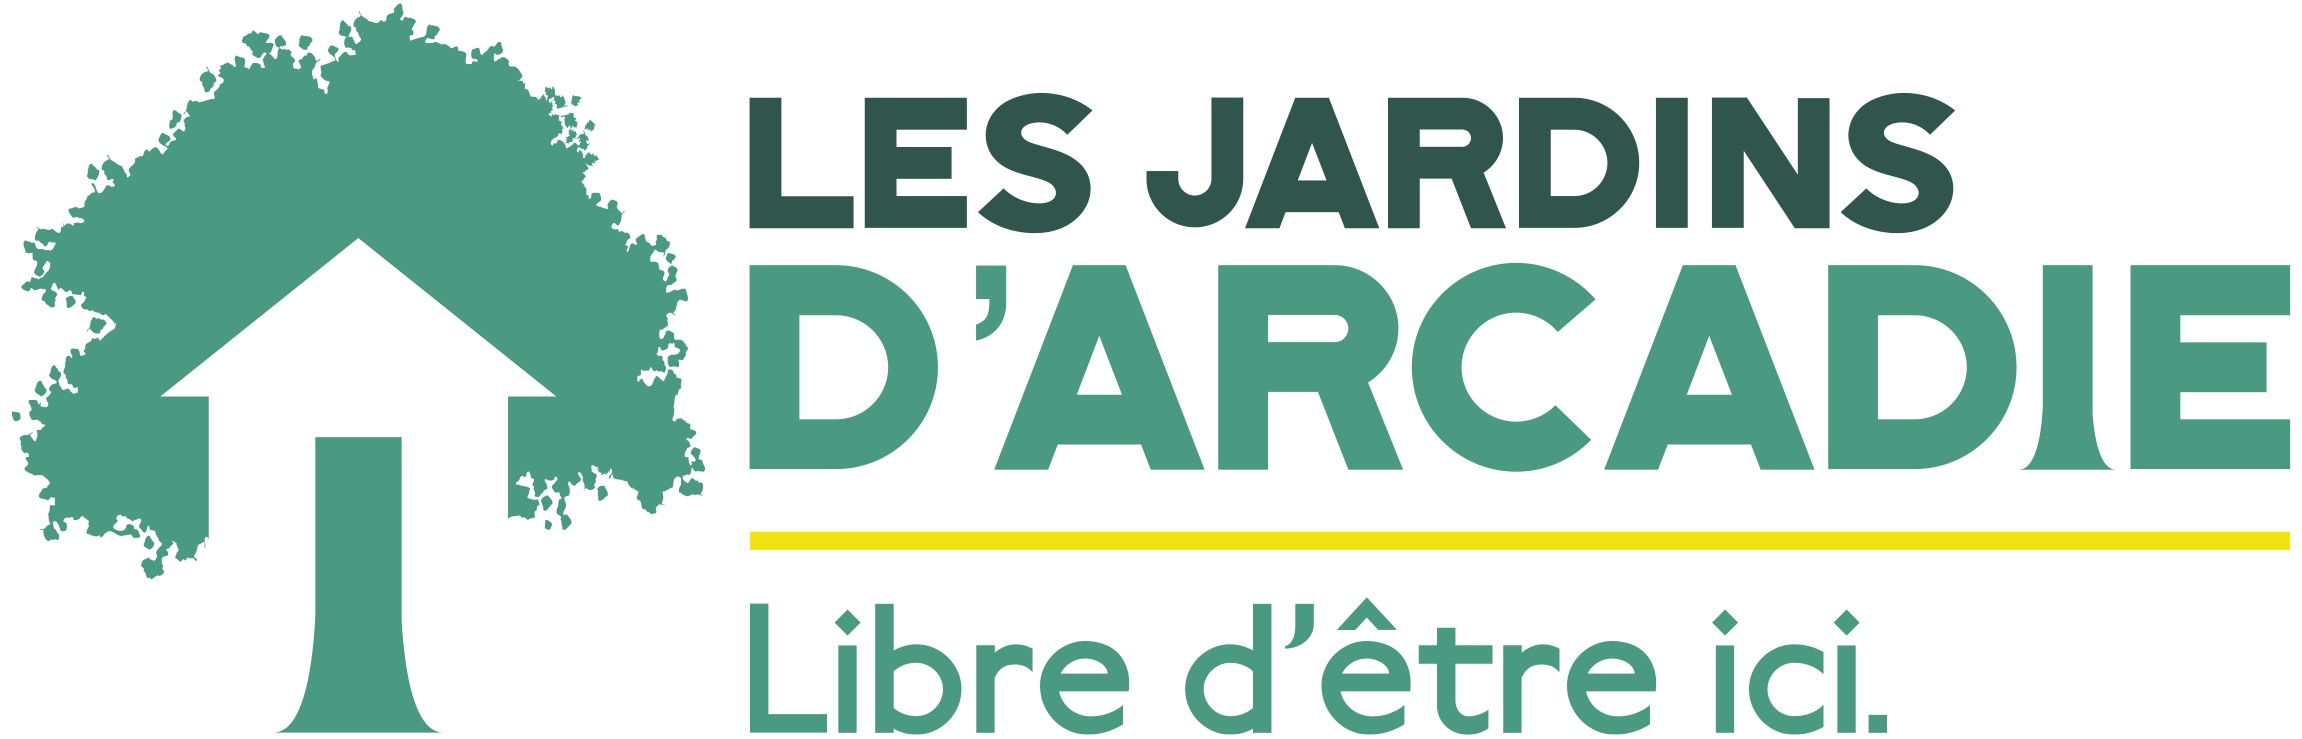 LES JARDINS D ARCADIE, Lyon